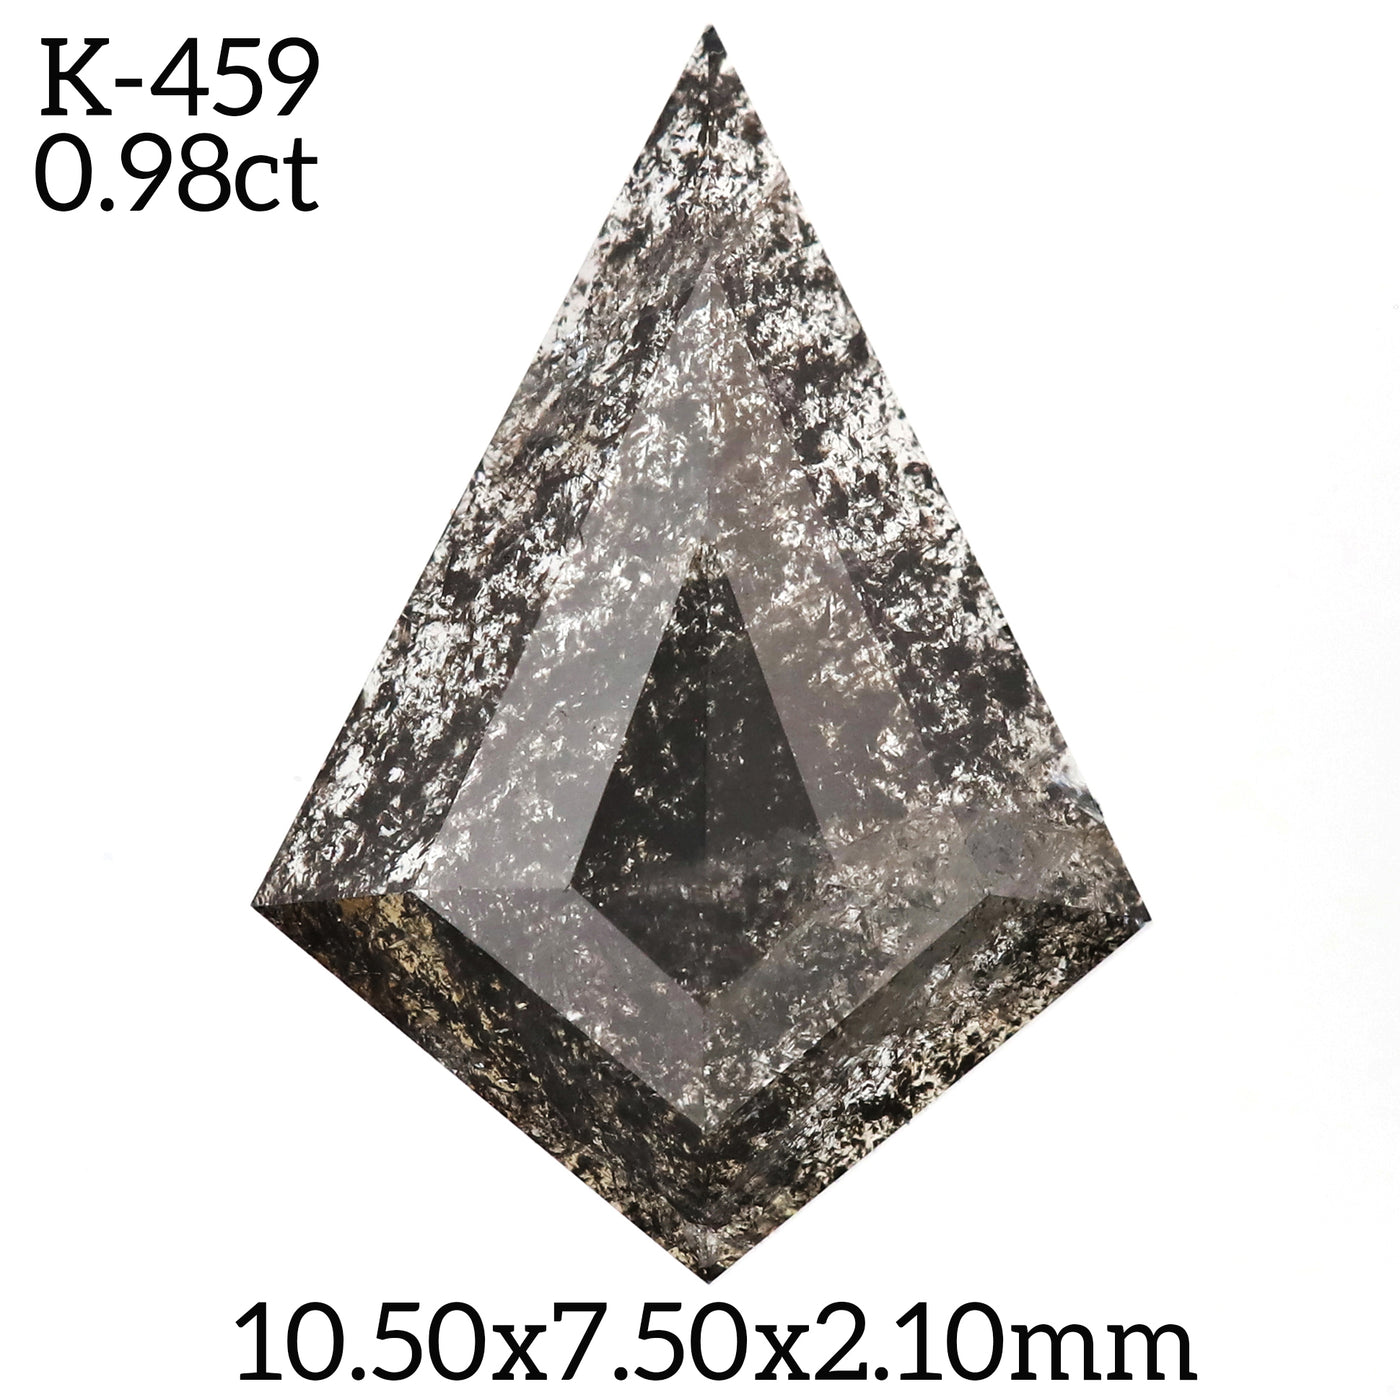 K459 - Salt and pepper kite diamond